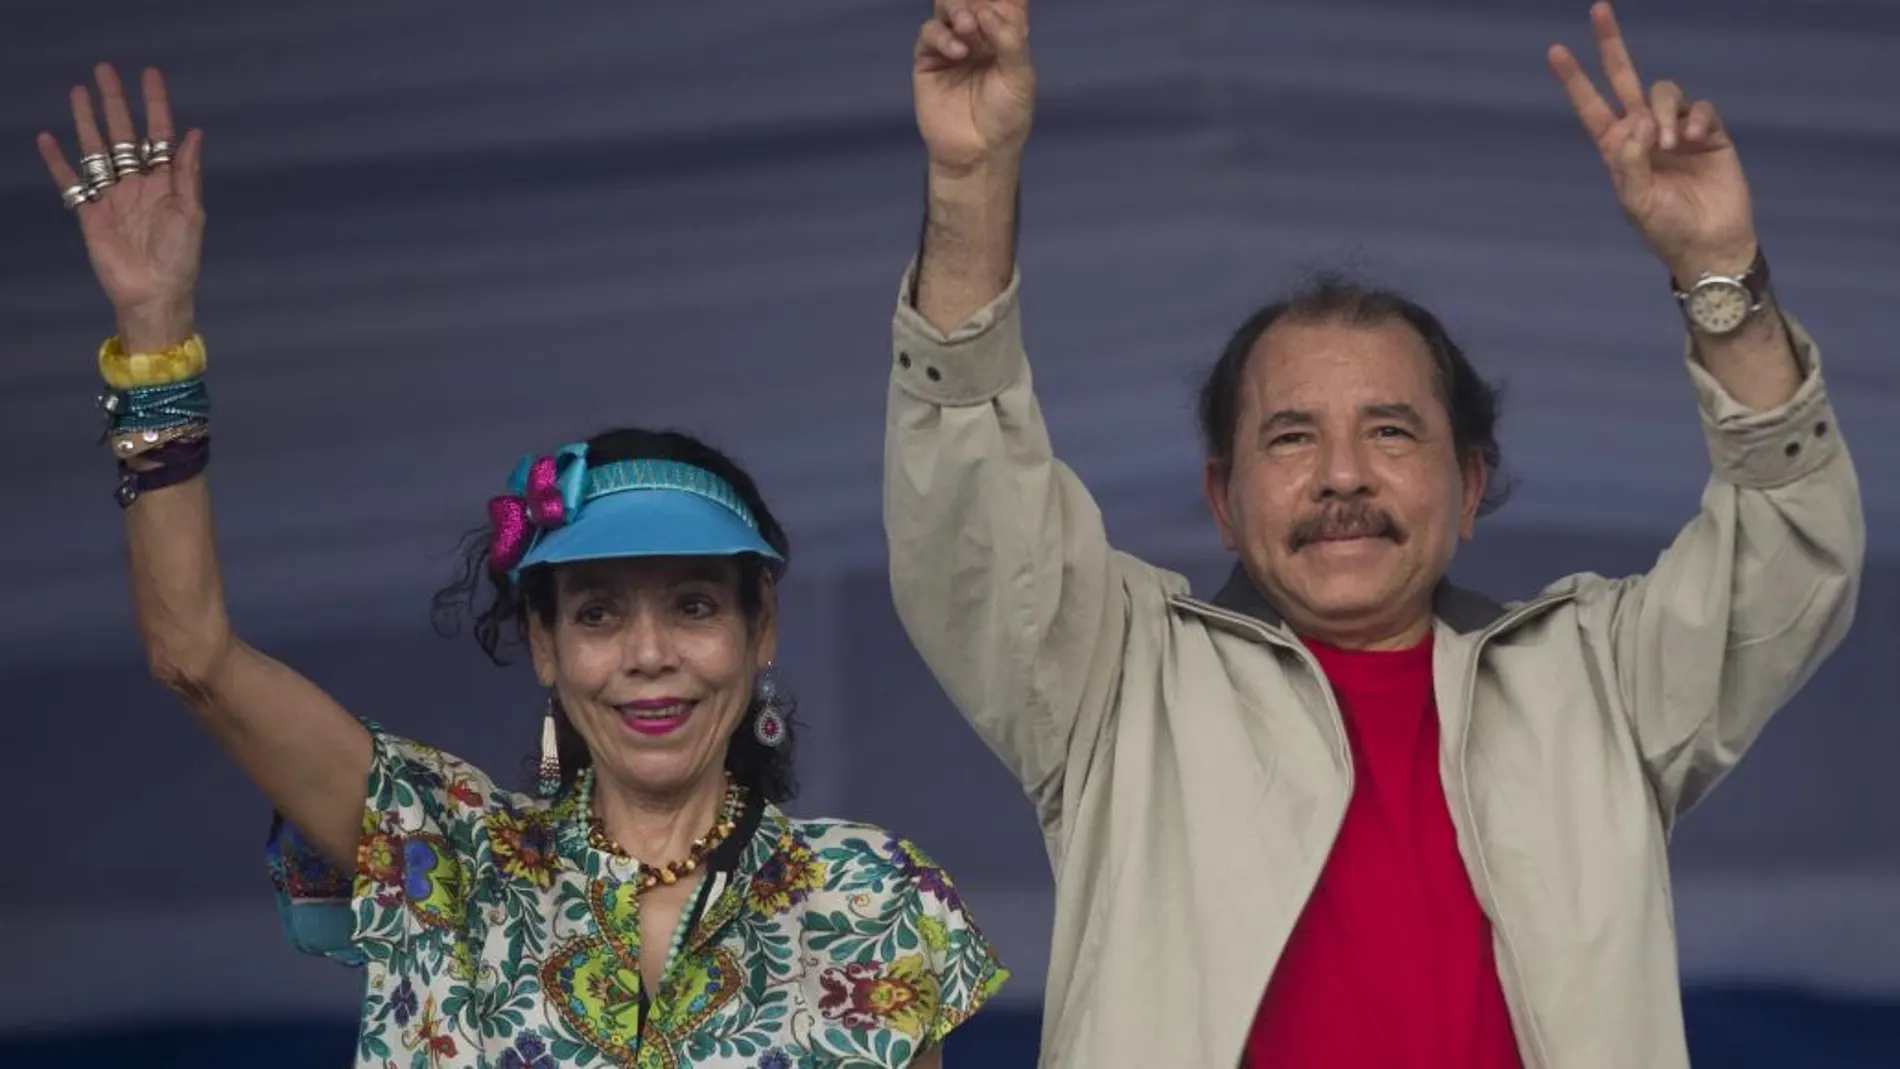 Daniel Ortega y su esposa, Rosario Murillo